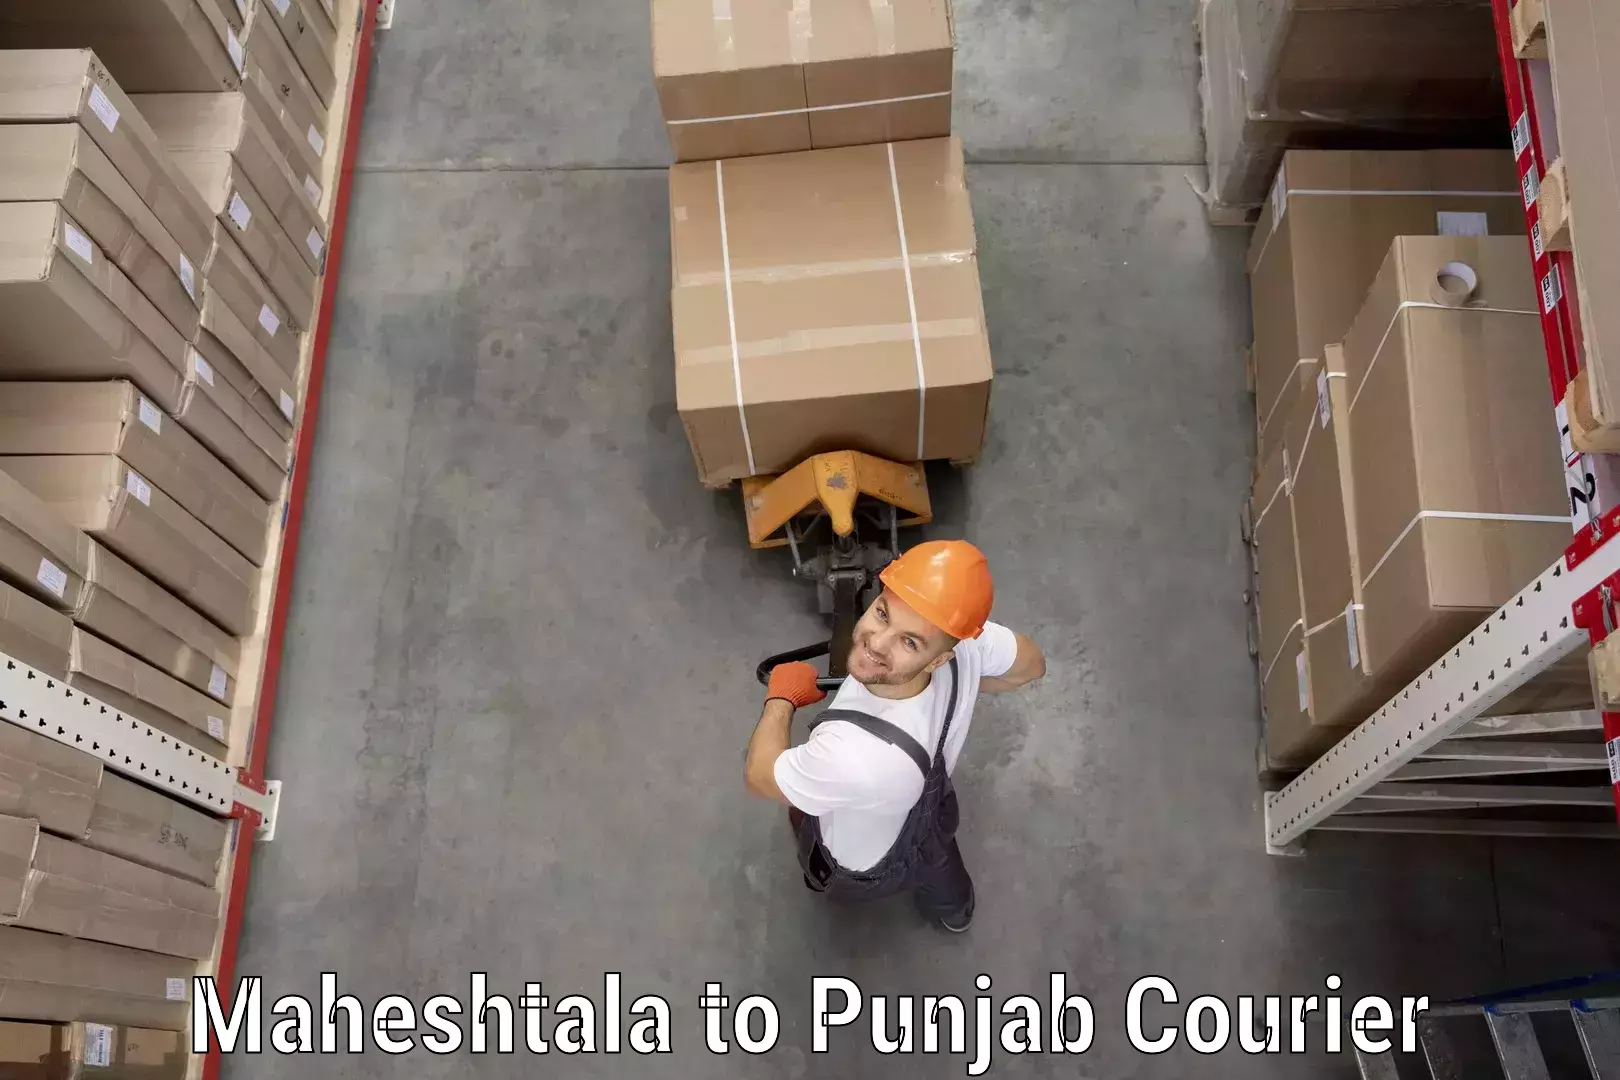 Express courier capabilities Maheshtala to Mohali